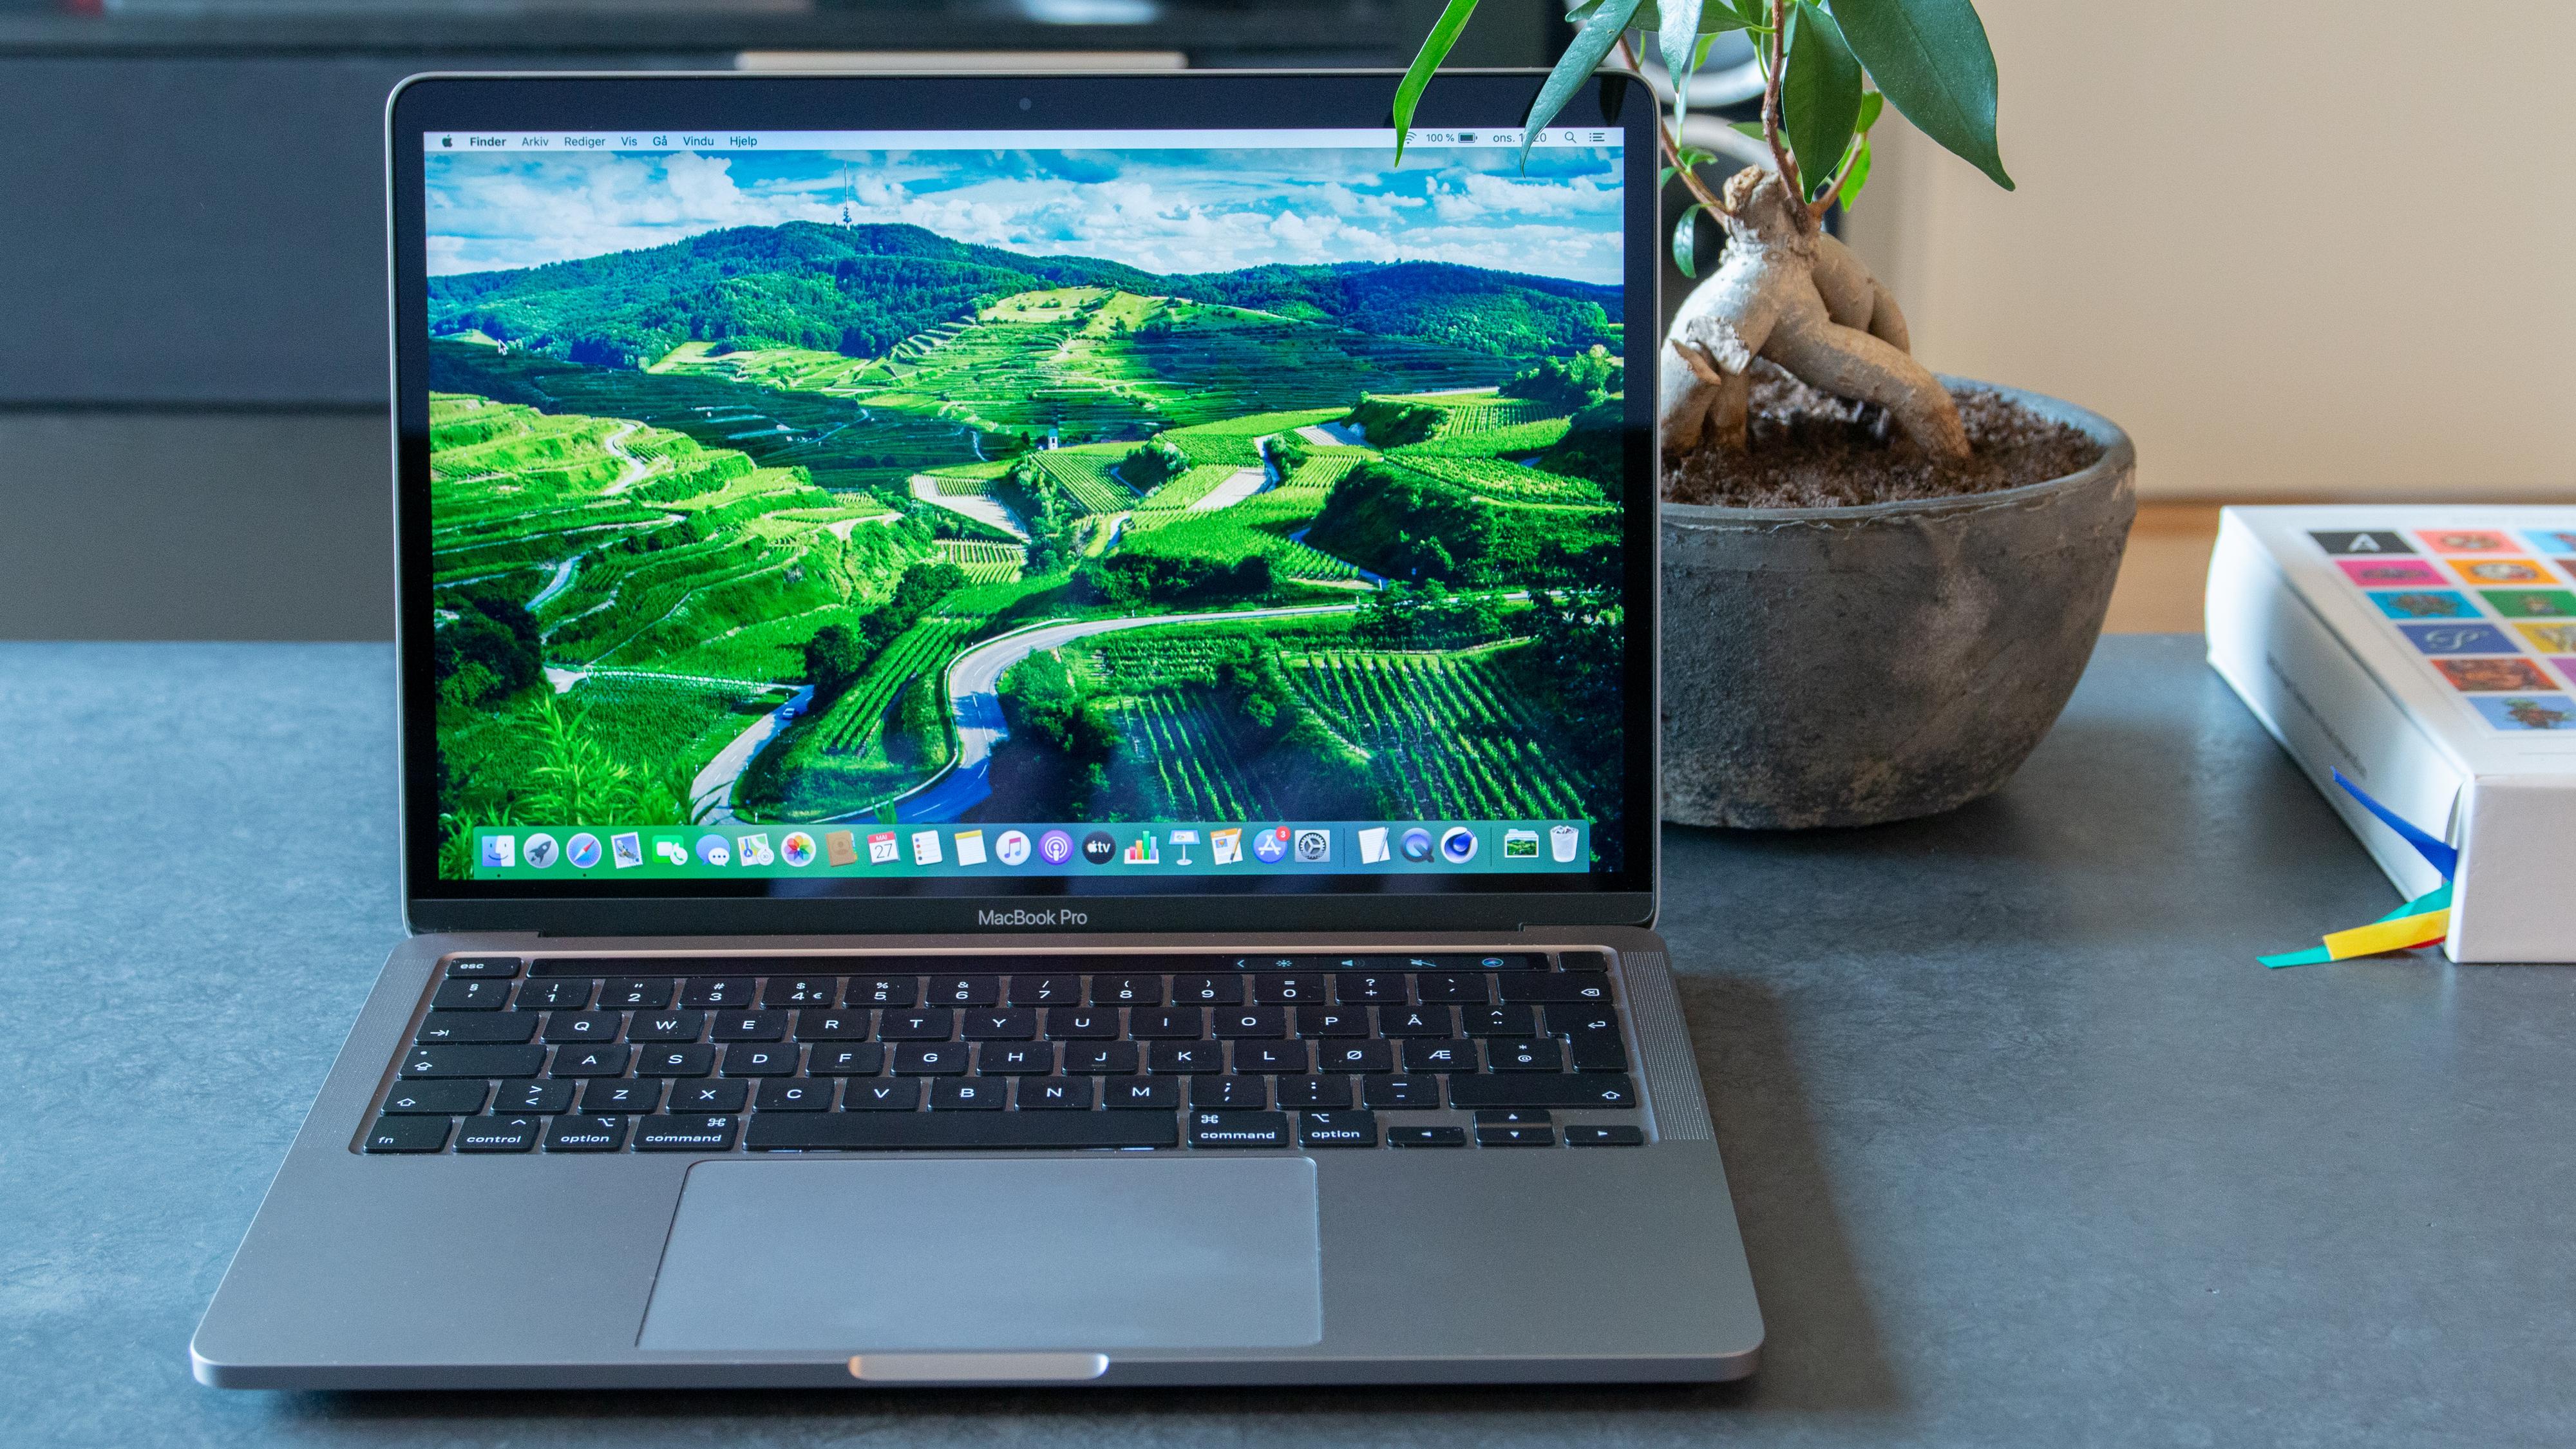 Hevder Apples første ARM-maskiner vil være MacBook Pro 13 og iMac